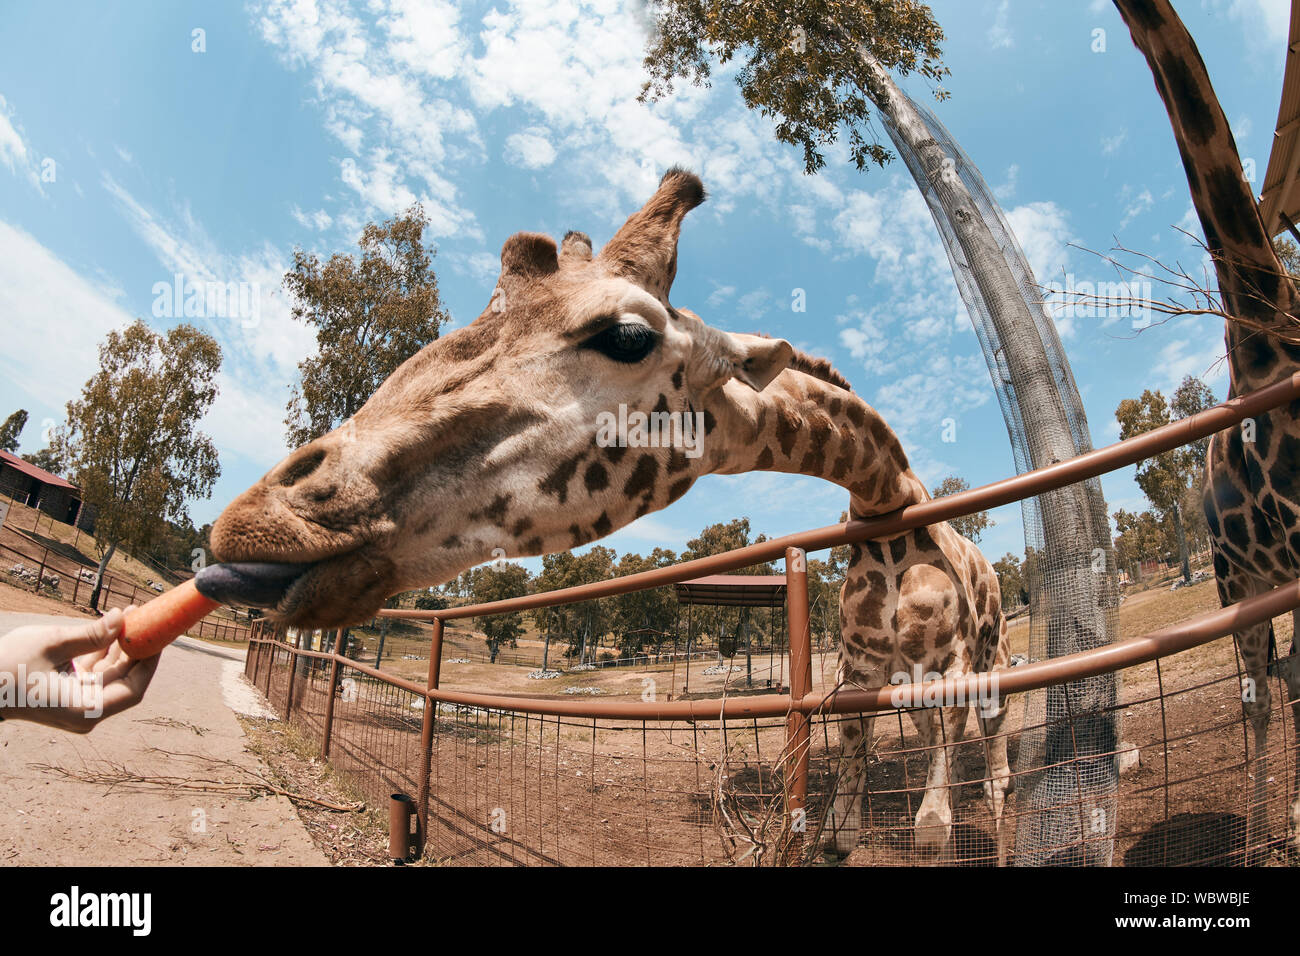 La giraffa fuori la sua lingua per mangiare una carota. Foto Stock